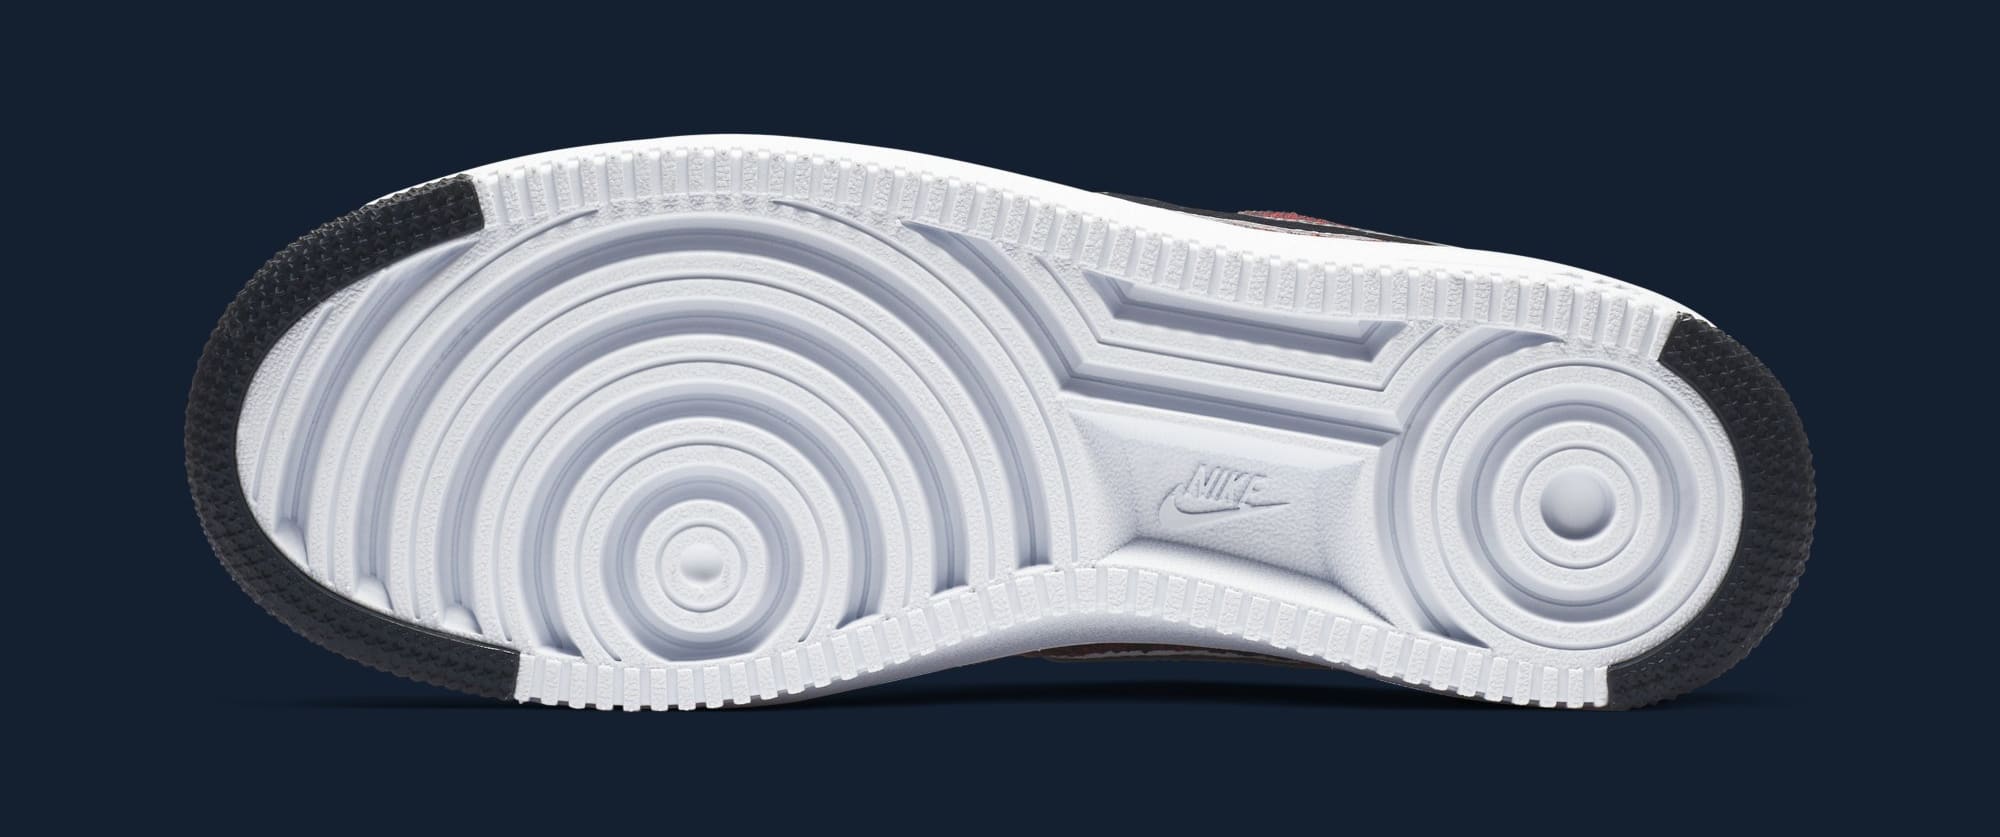 Nike Men's Air Force 1 Low Ultra Flyknit RKK Shoe